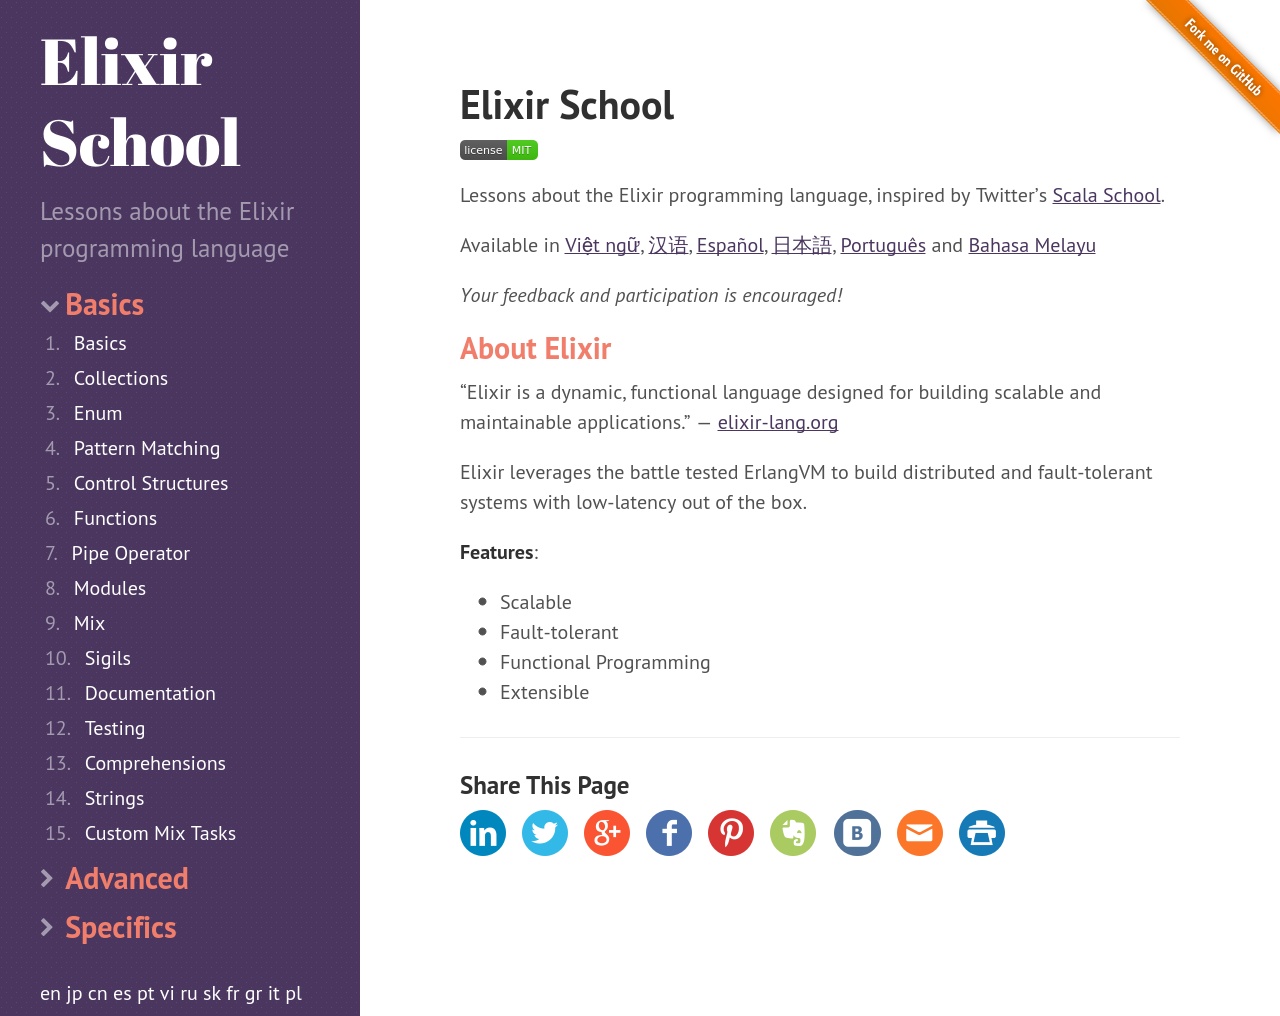 Elixir School